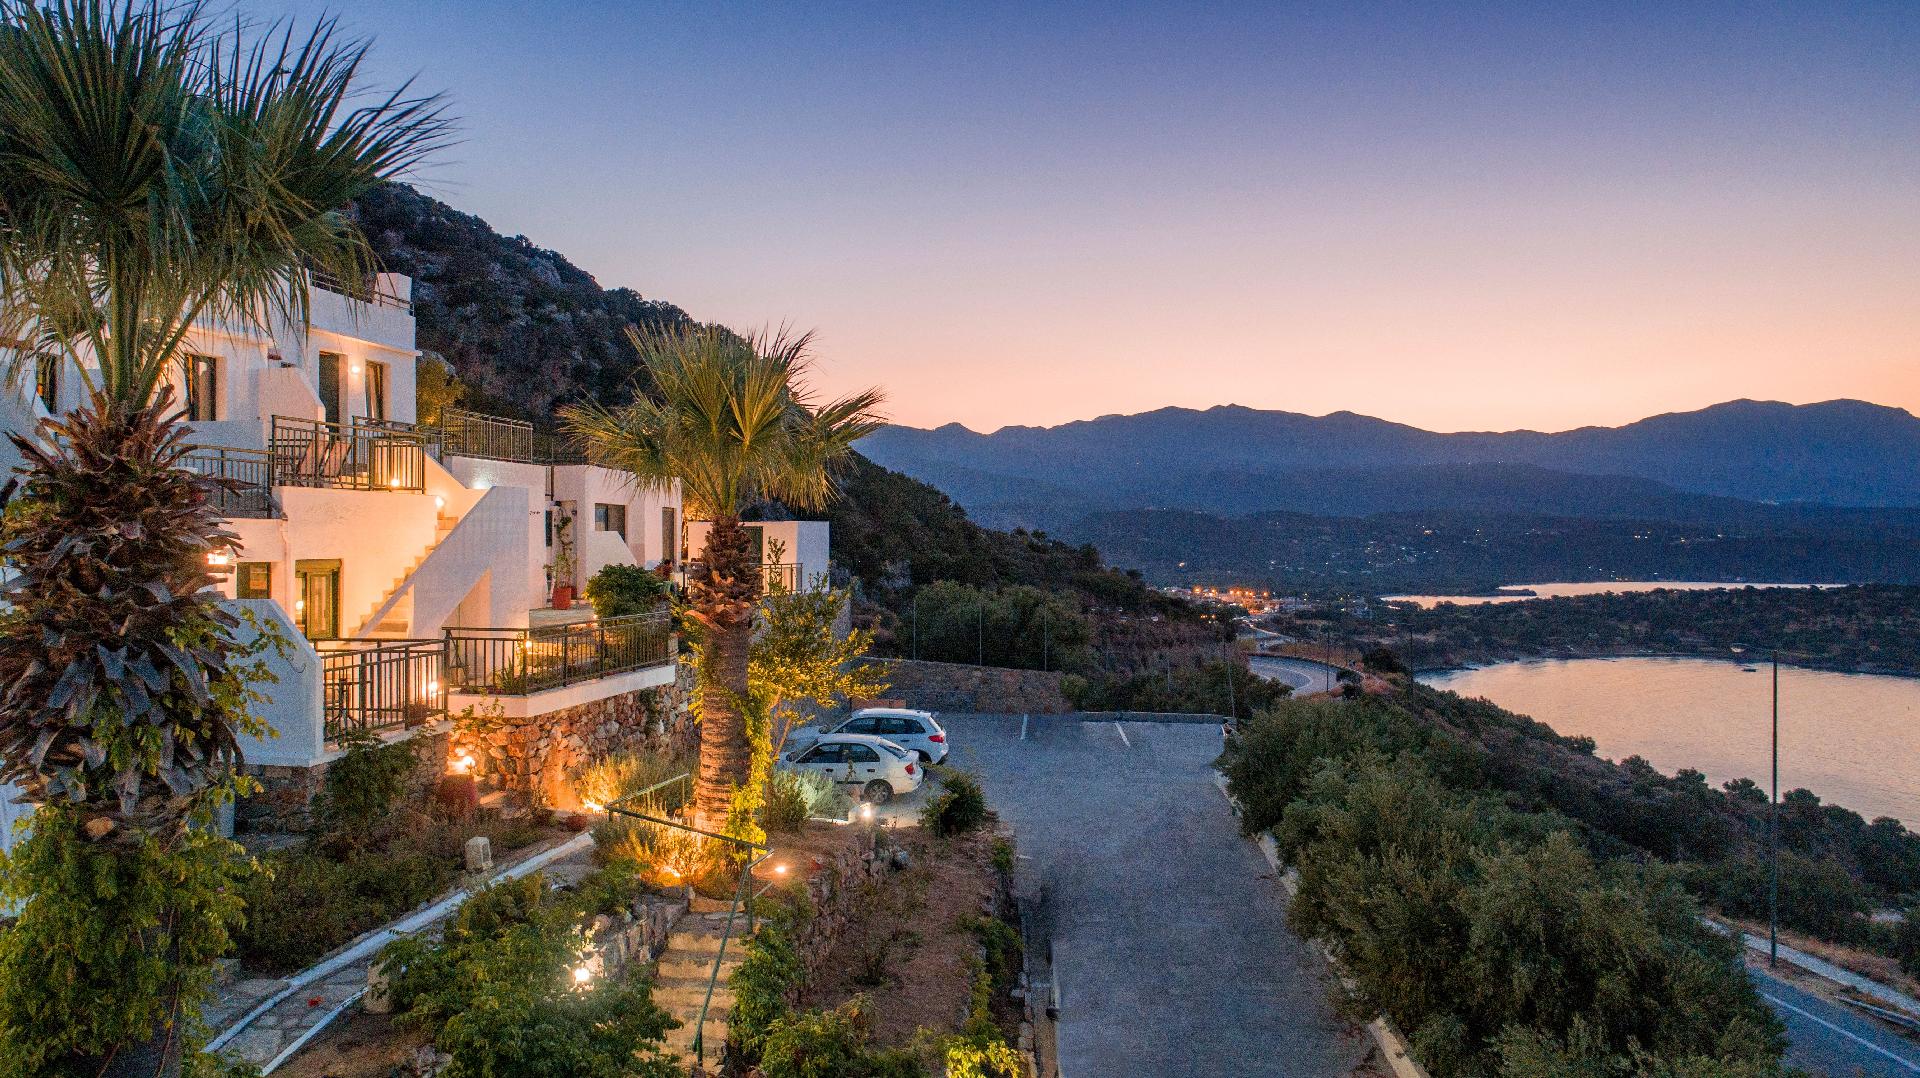 Ferienwohnung für 4 Personen ca. 35 m² i Ferienhaus in Griechenland